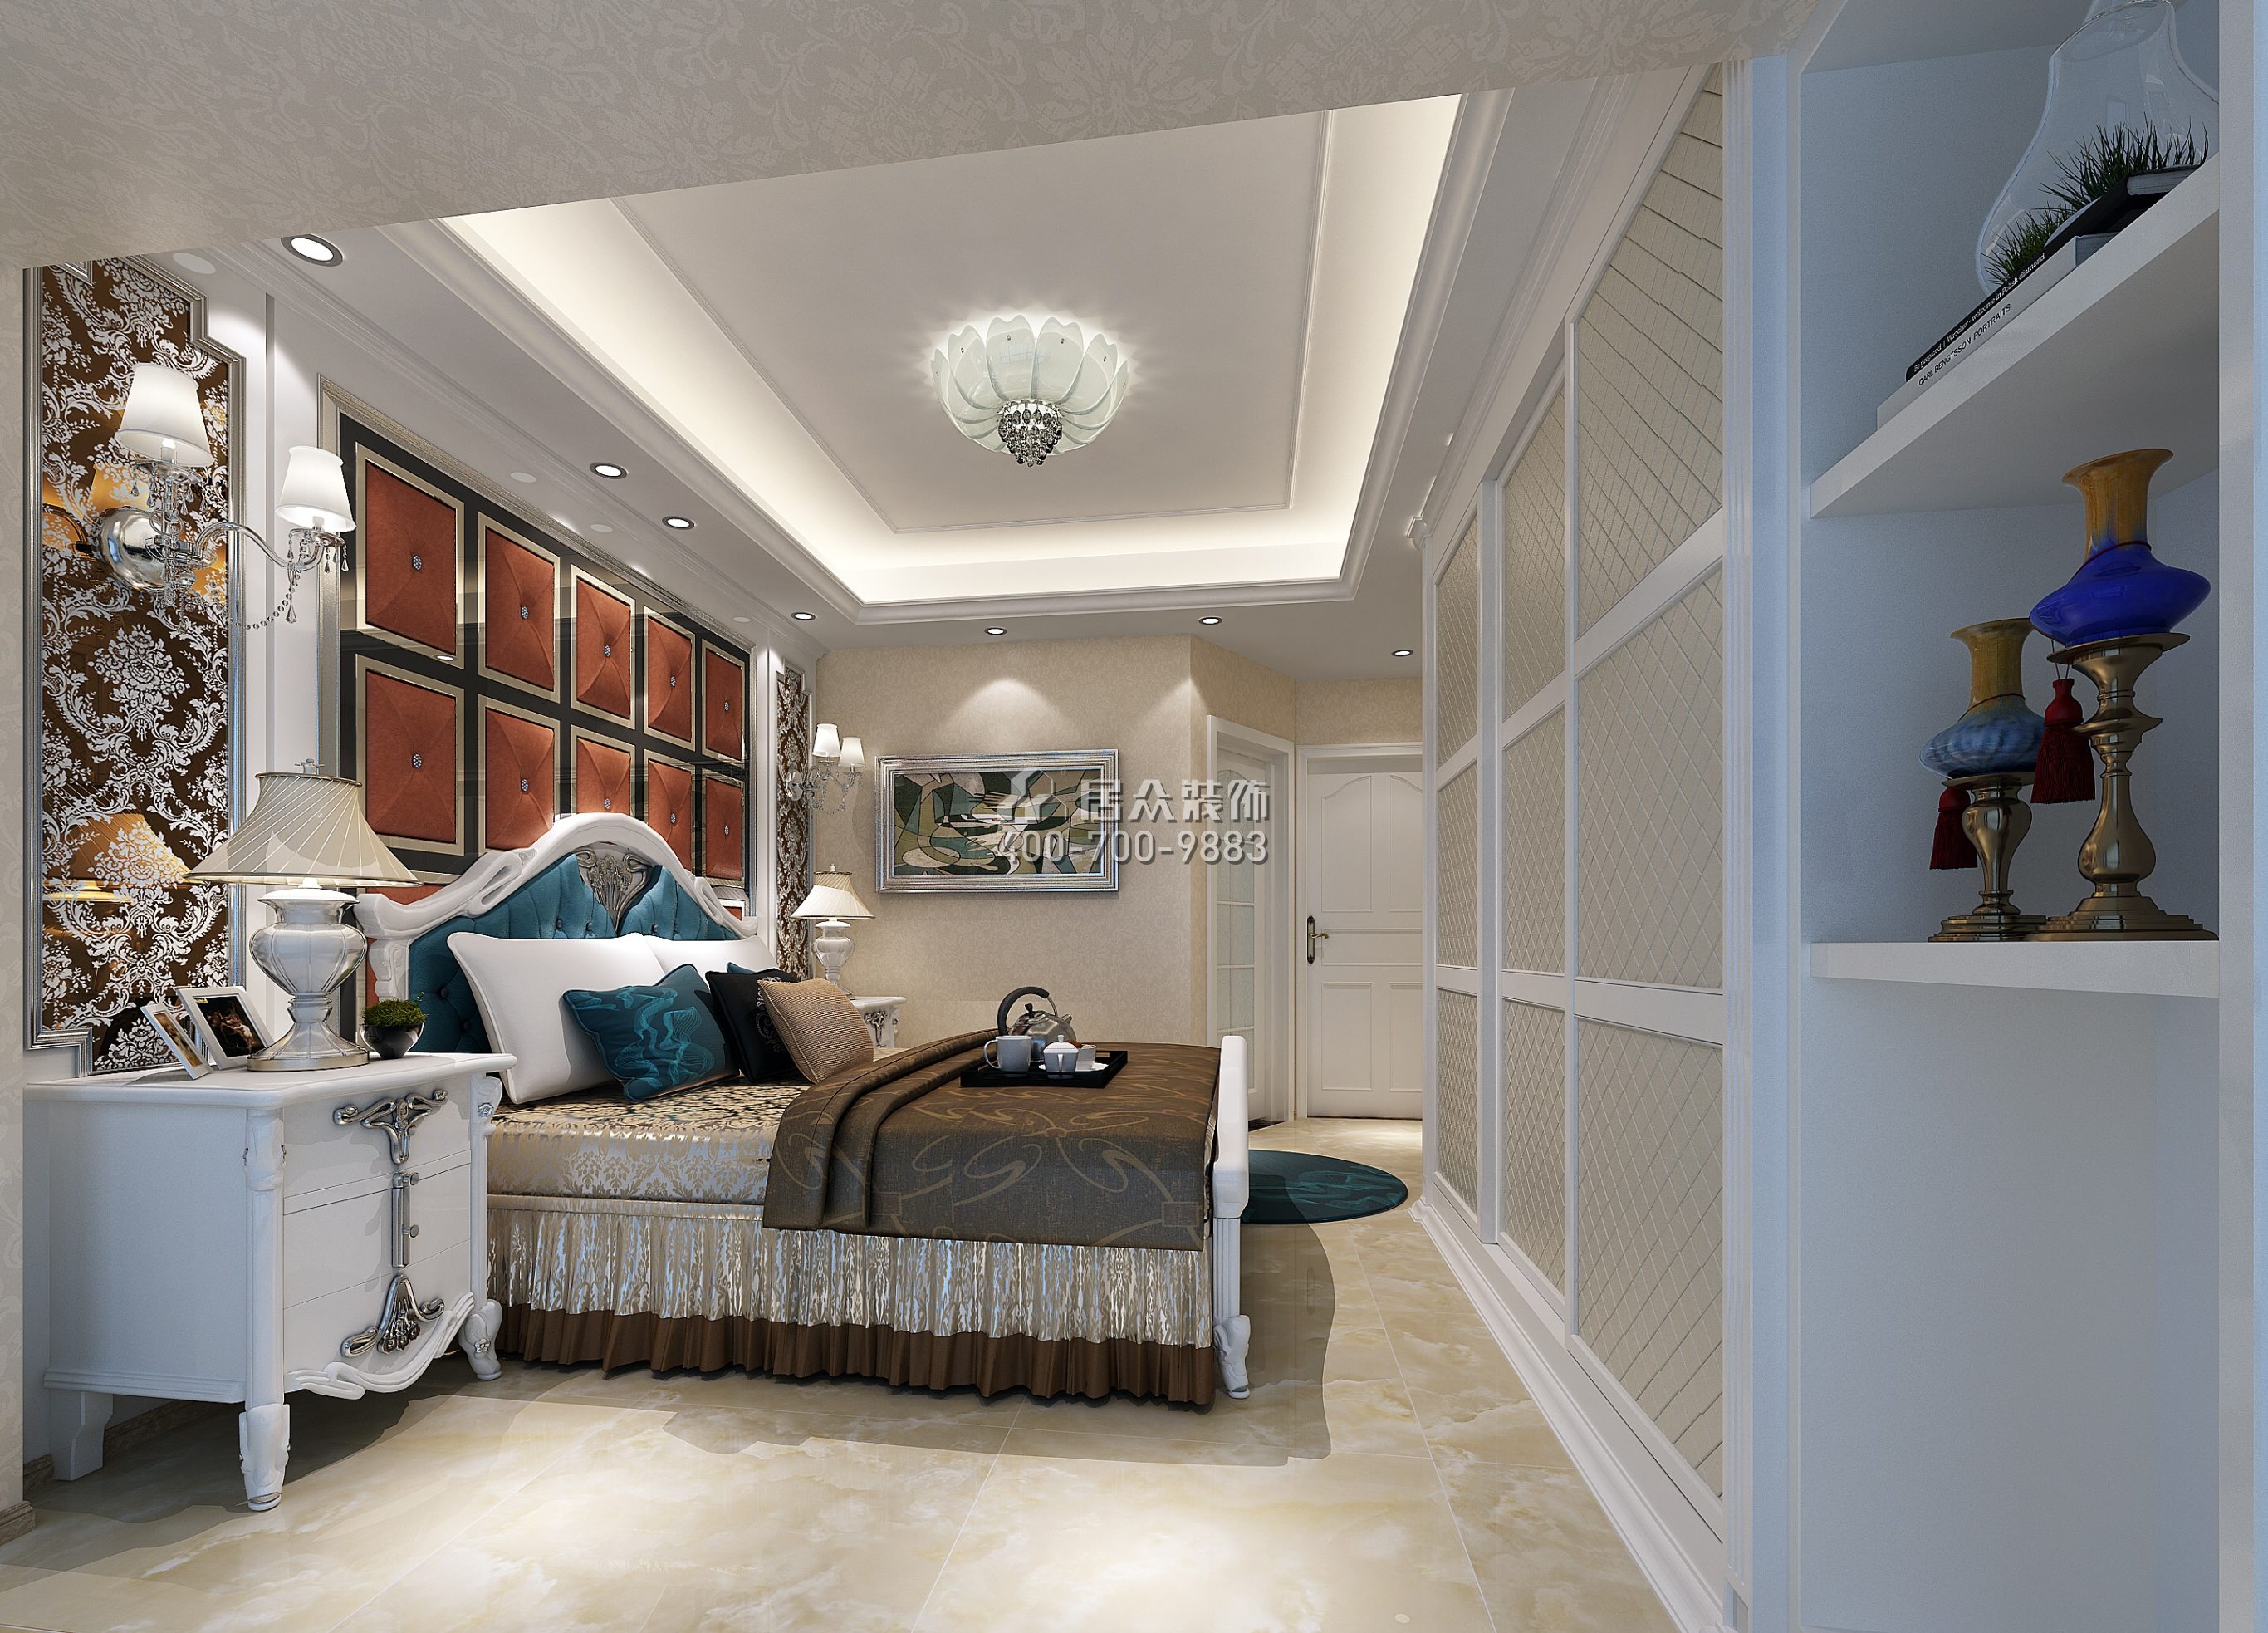 大运城邦四期92平方米美式风格平层户型卧室装修效果图